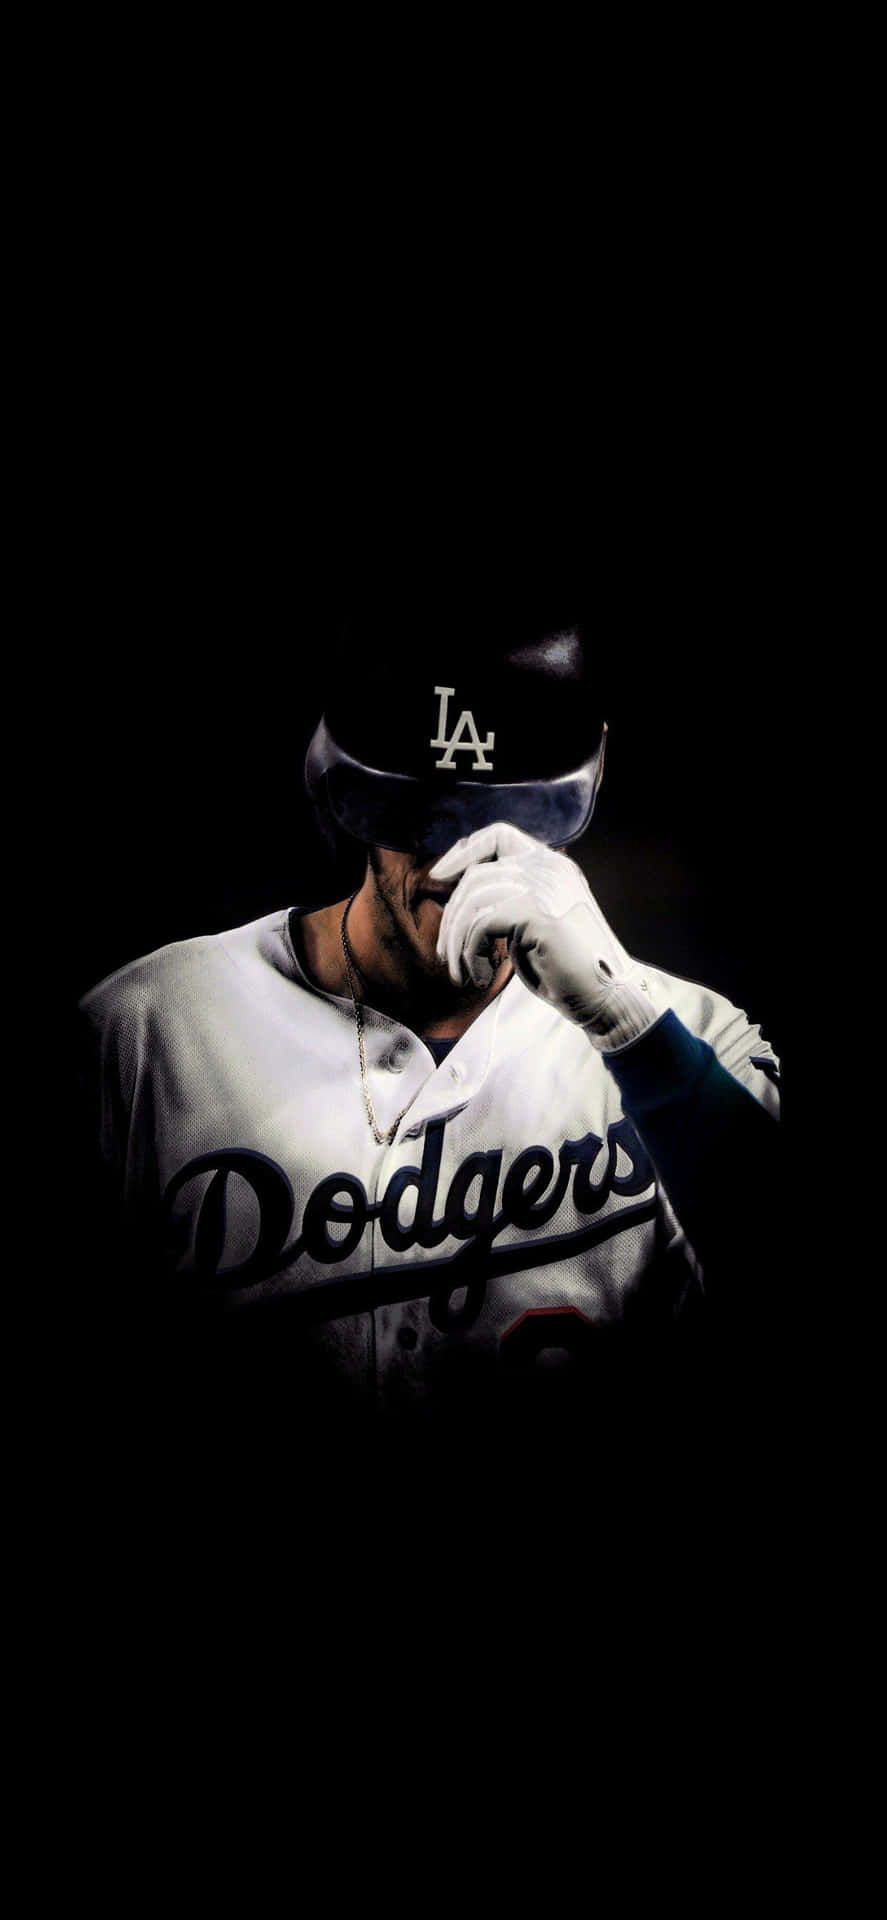 Dodgersiphone Cody Bellinger - Dodgers Iphone Bakgrundsbild Av Cody Bellinger Wallpaper